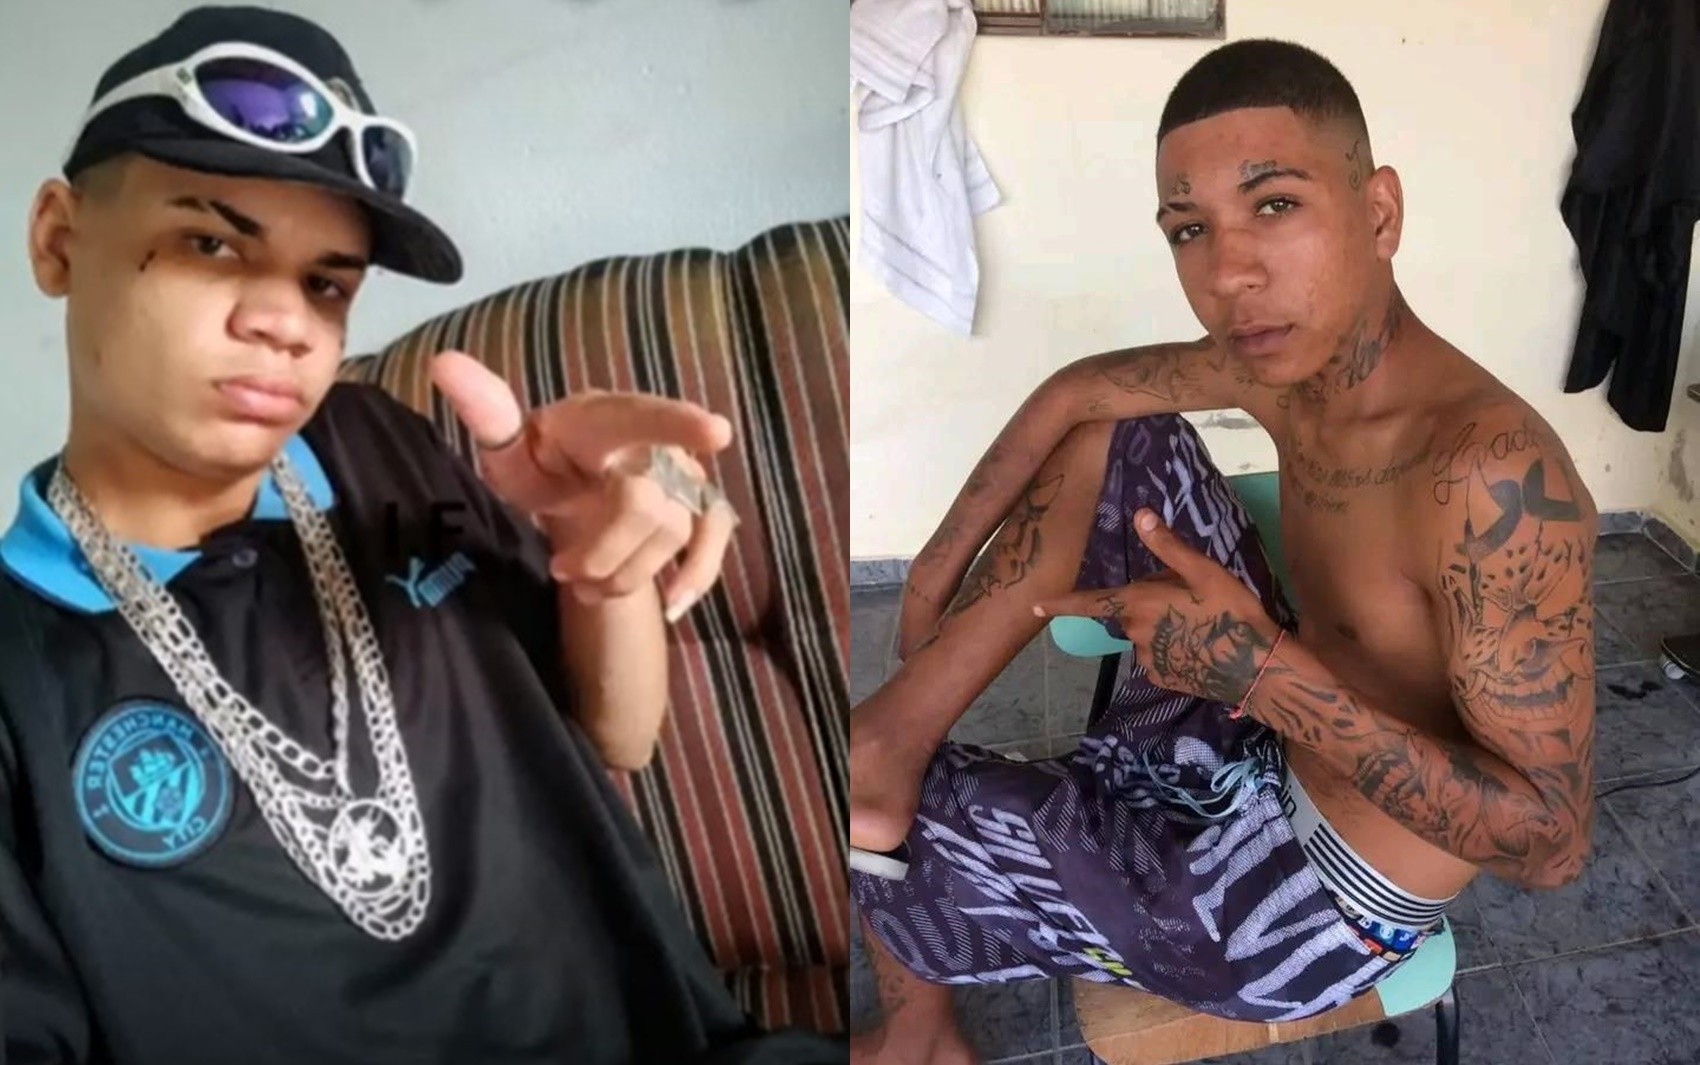 Jovens passam mal e morrem após uso de drogas em festa em Itanhandu; suspeita é de overdose